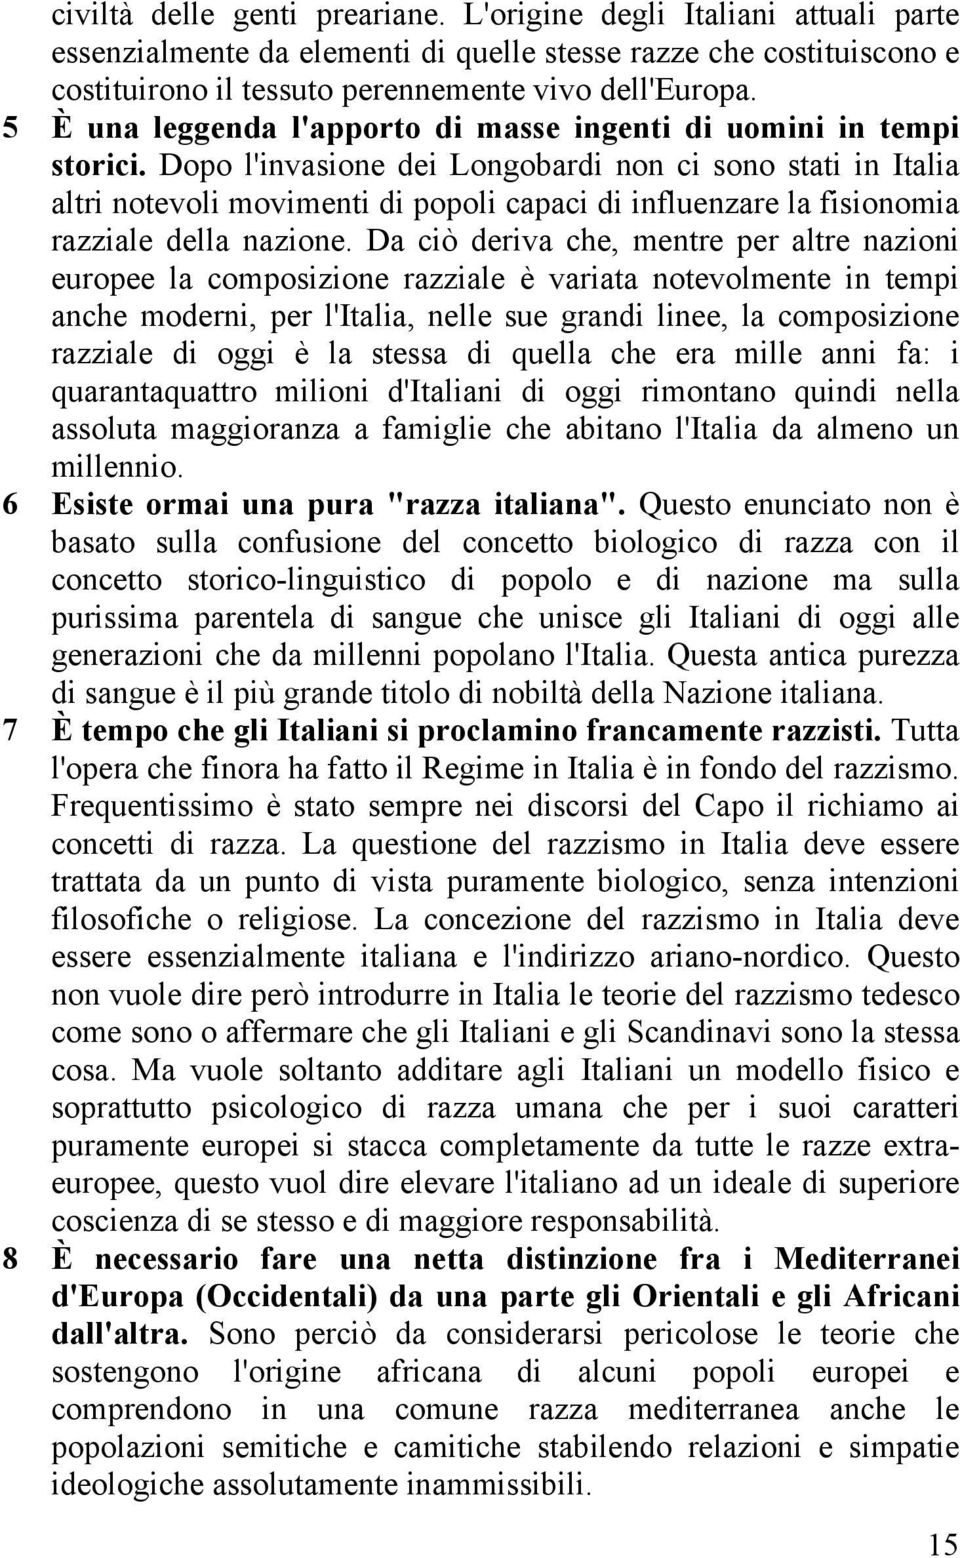 Dopo l'invasione dei Longobardi non ci sono stati in Italia altri notevoli movimenti di popoli capaci di influenzare la fisionomia razziale della nazione.